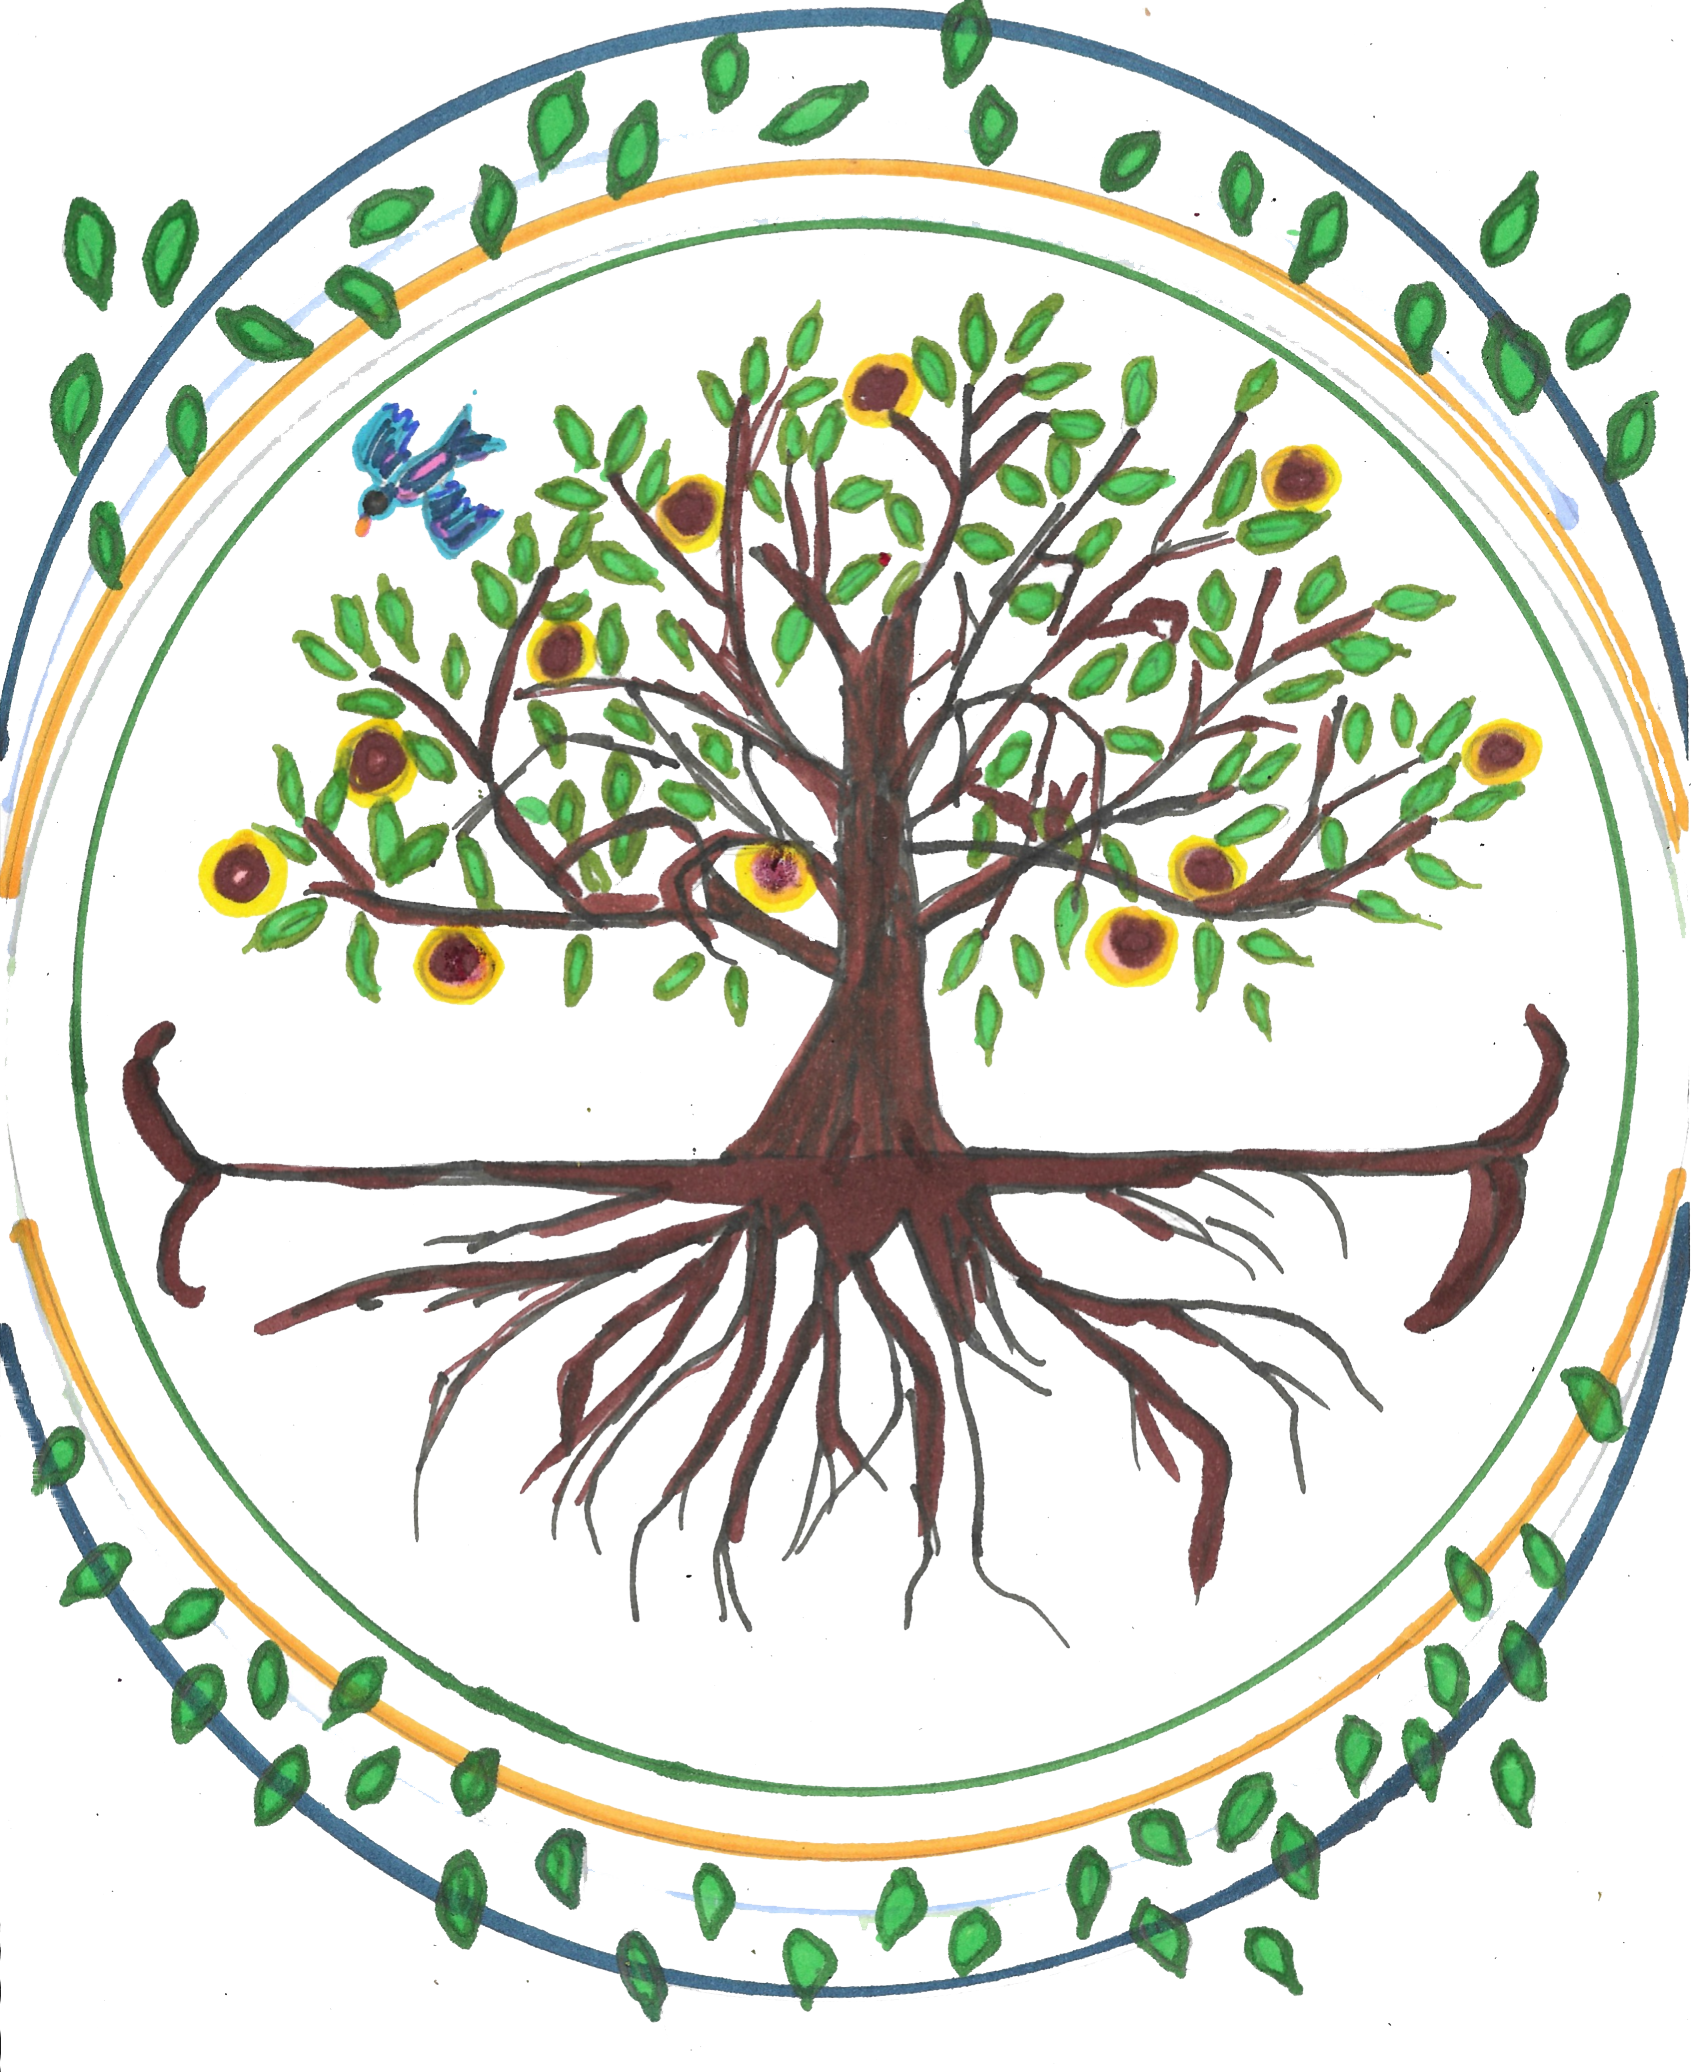 logo_arbre